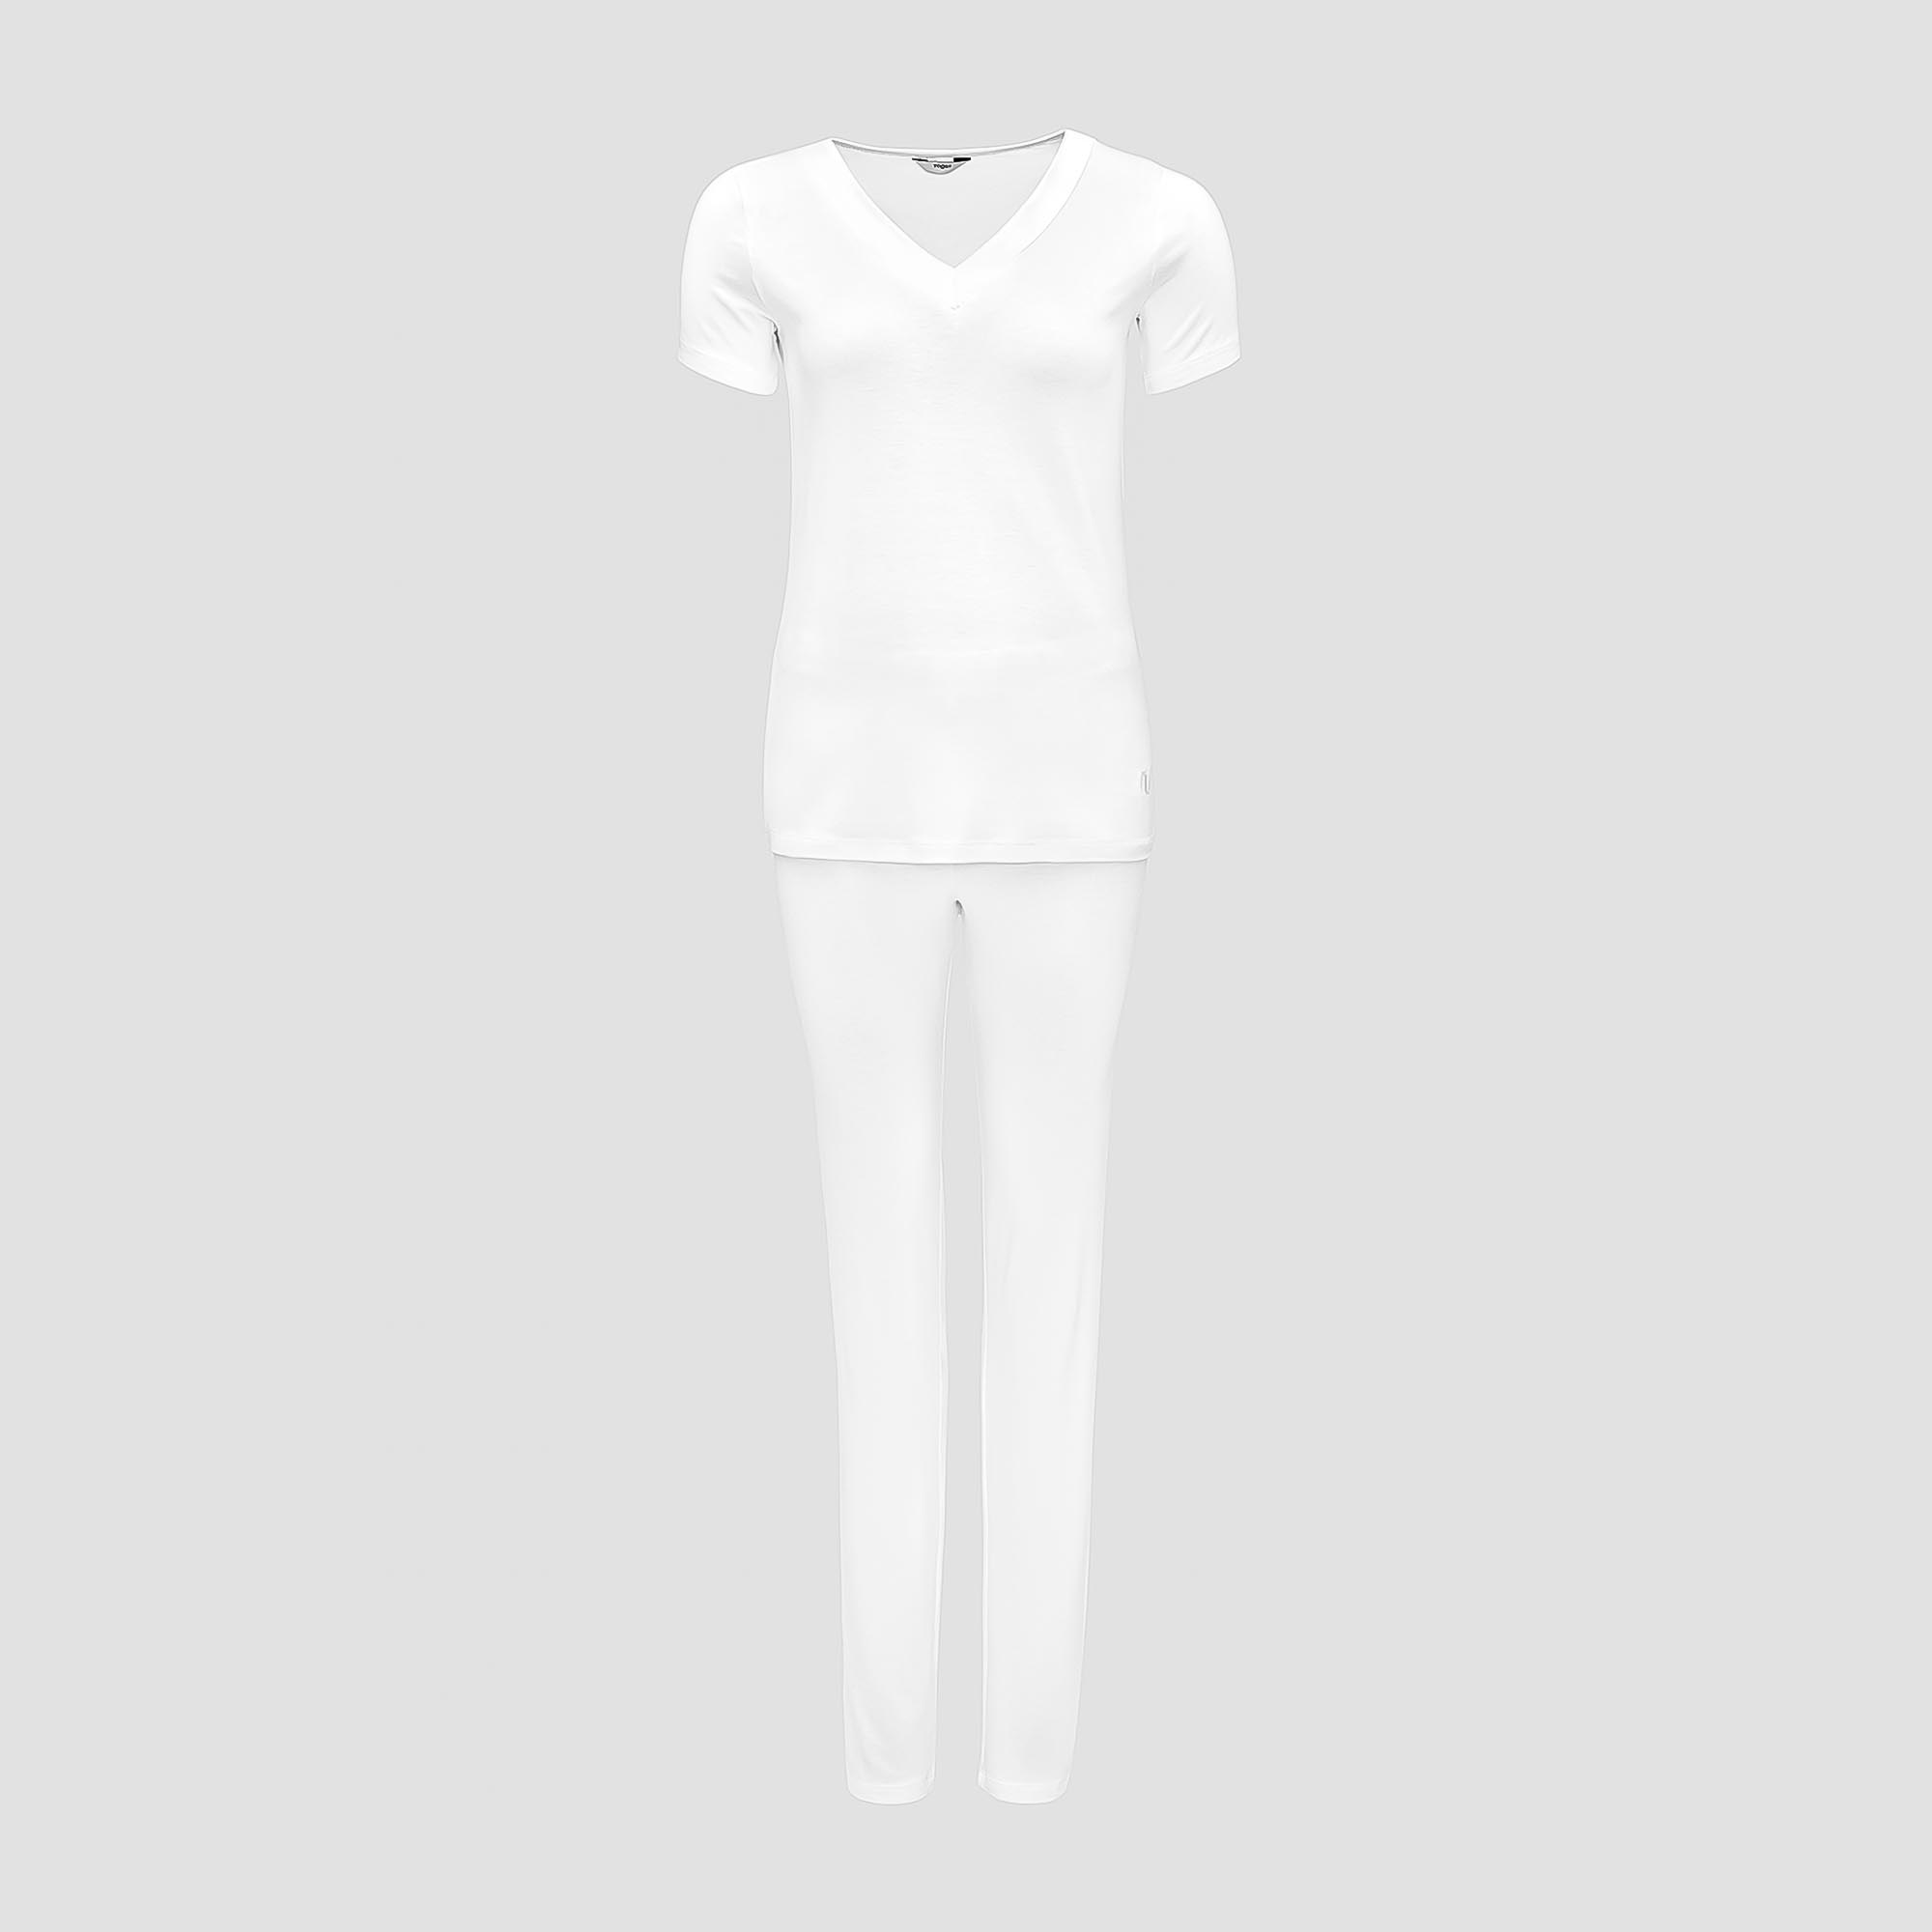 Пижама Togas Ингелла белая женская XL(50) 2 предмета жен пижама с шортами инь янь белый р 54